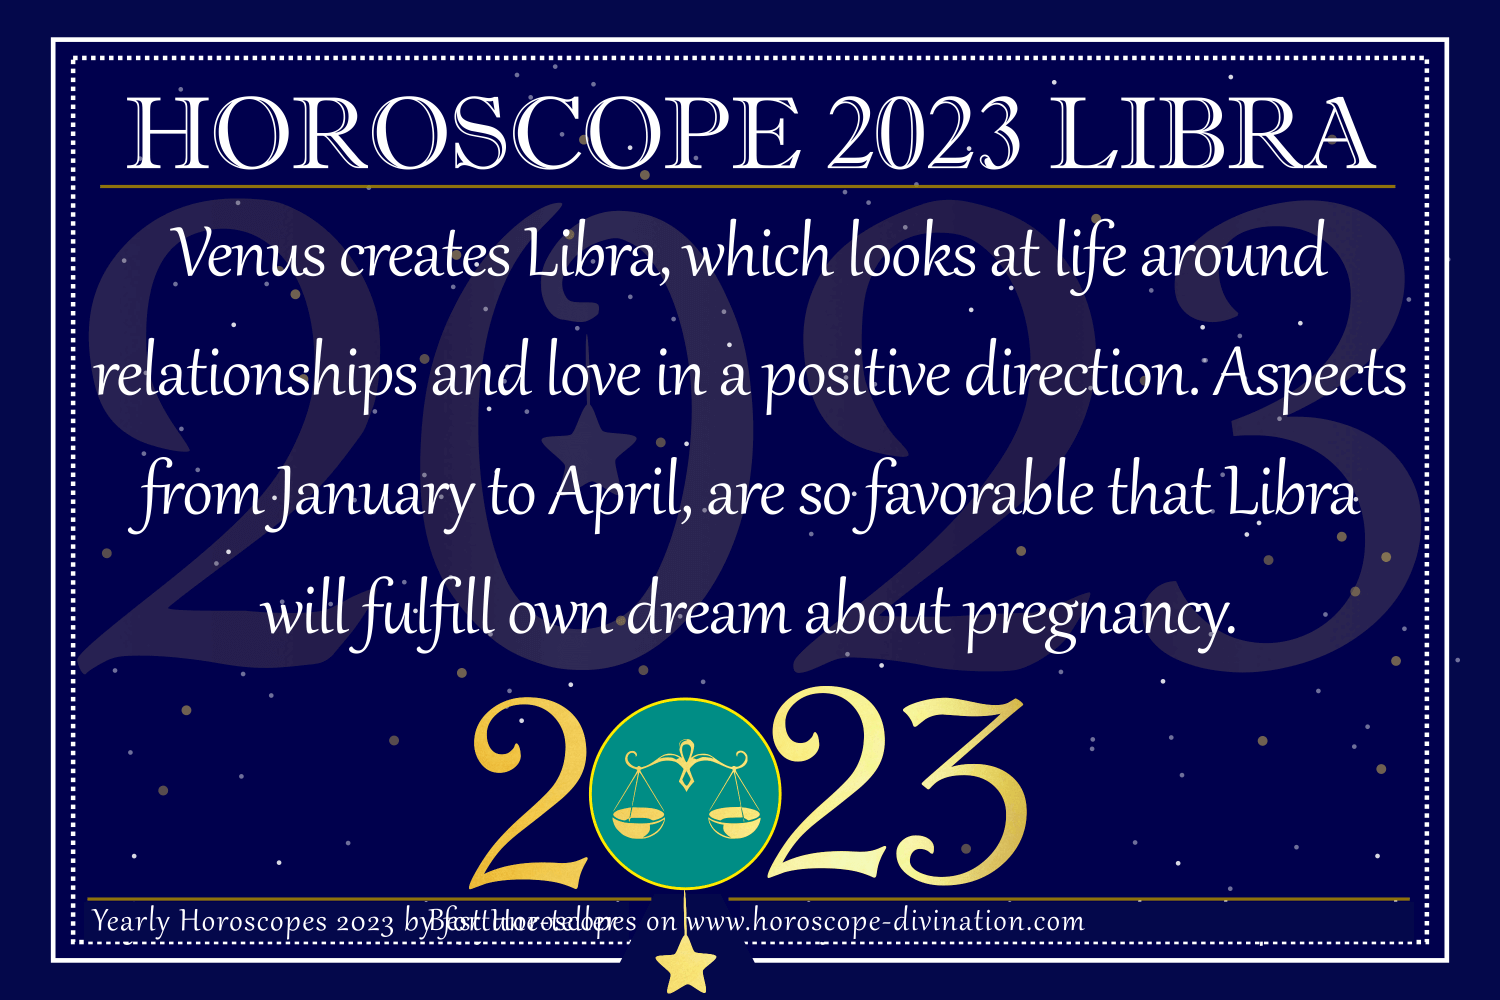 Libra: Horoscope 2023 - Love & Pregnancy